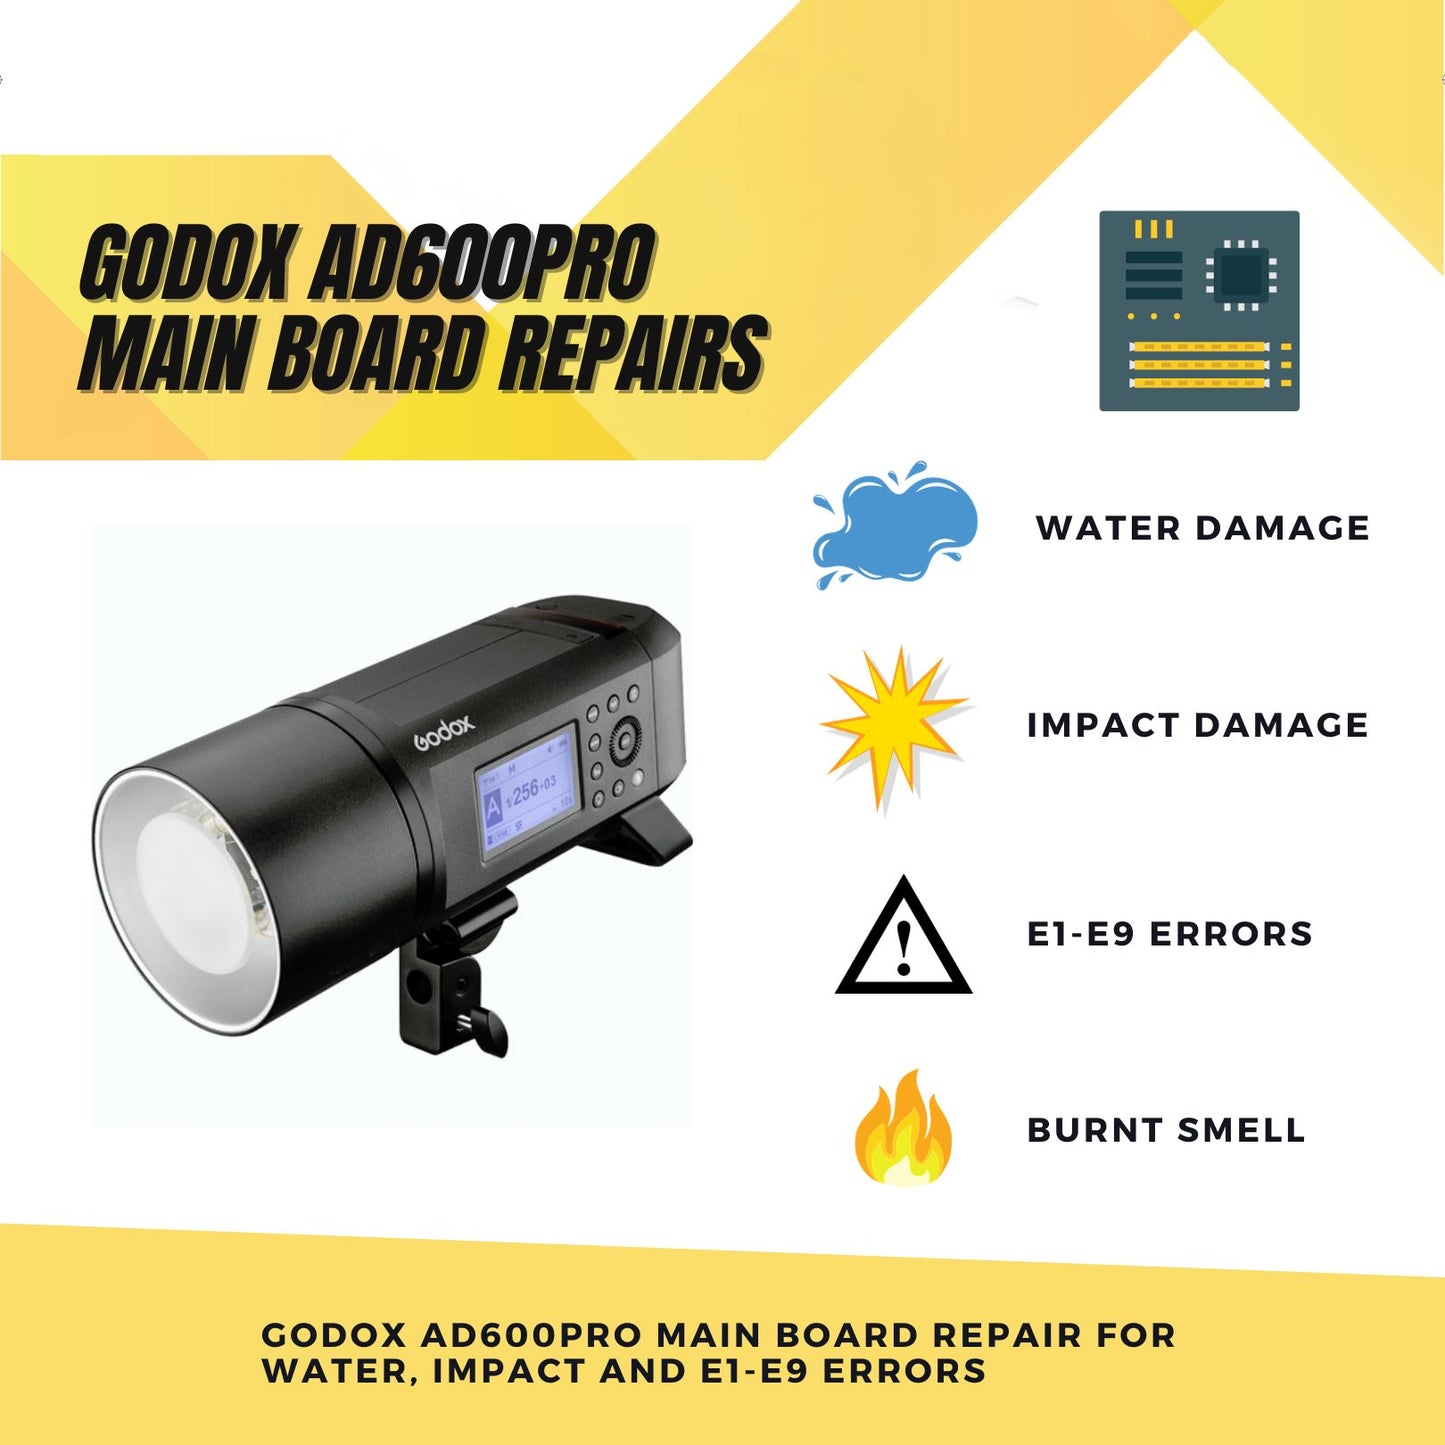 Repair Godox AD600PRO: Drop / Water Damage or E1-E9 Errors